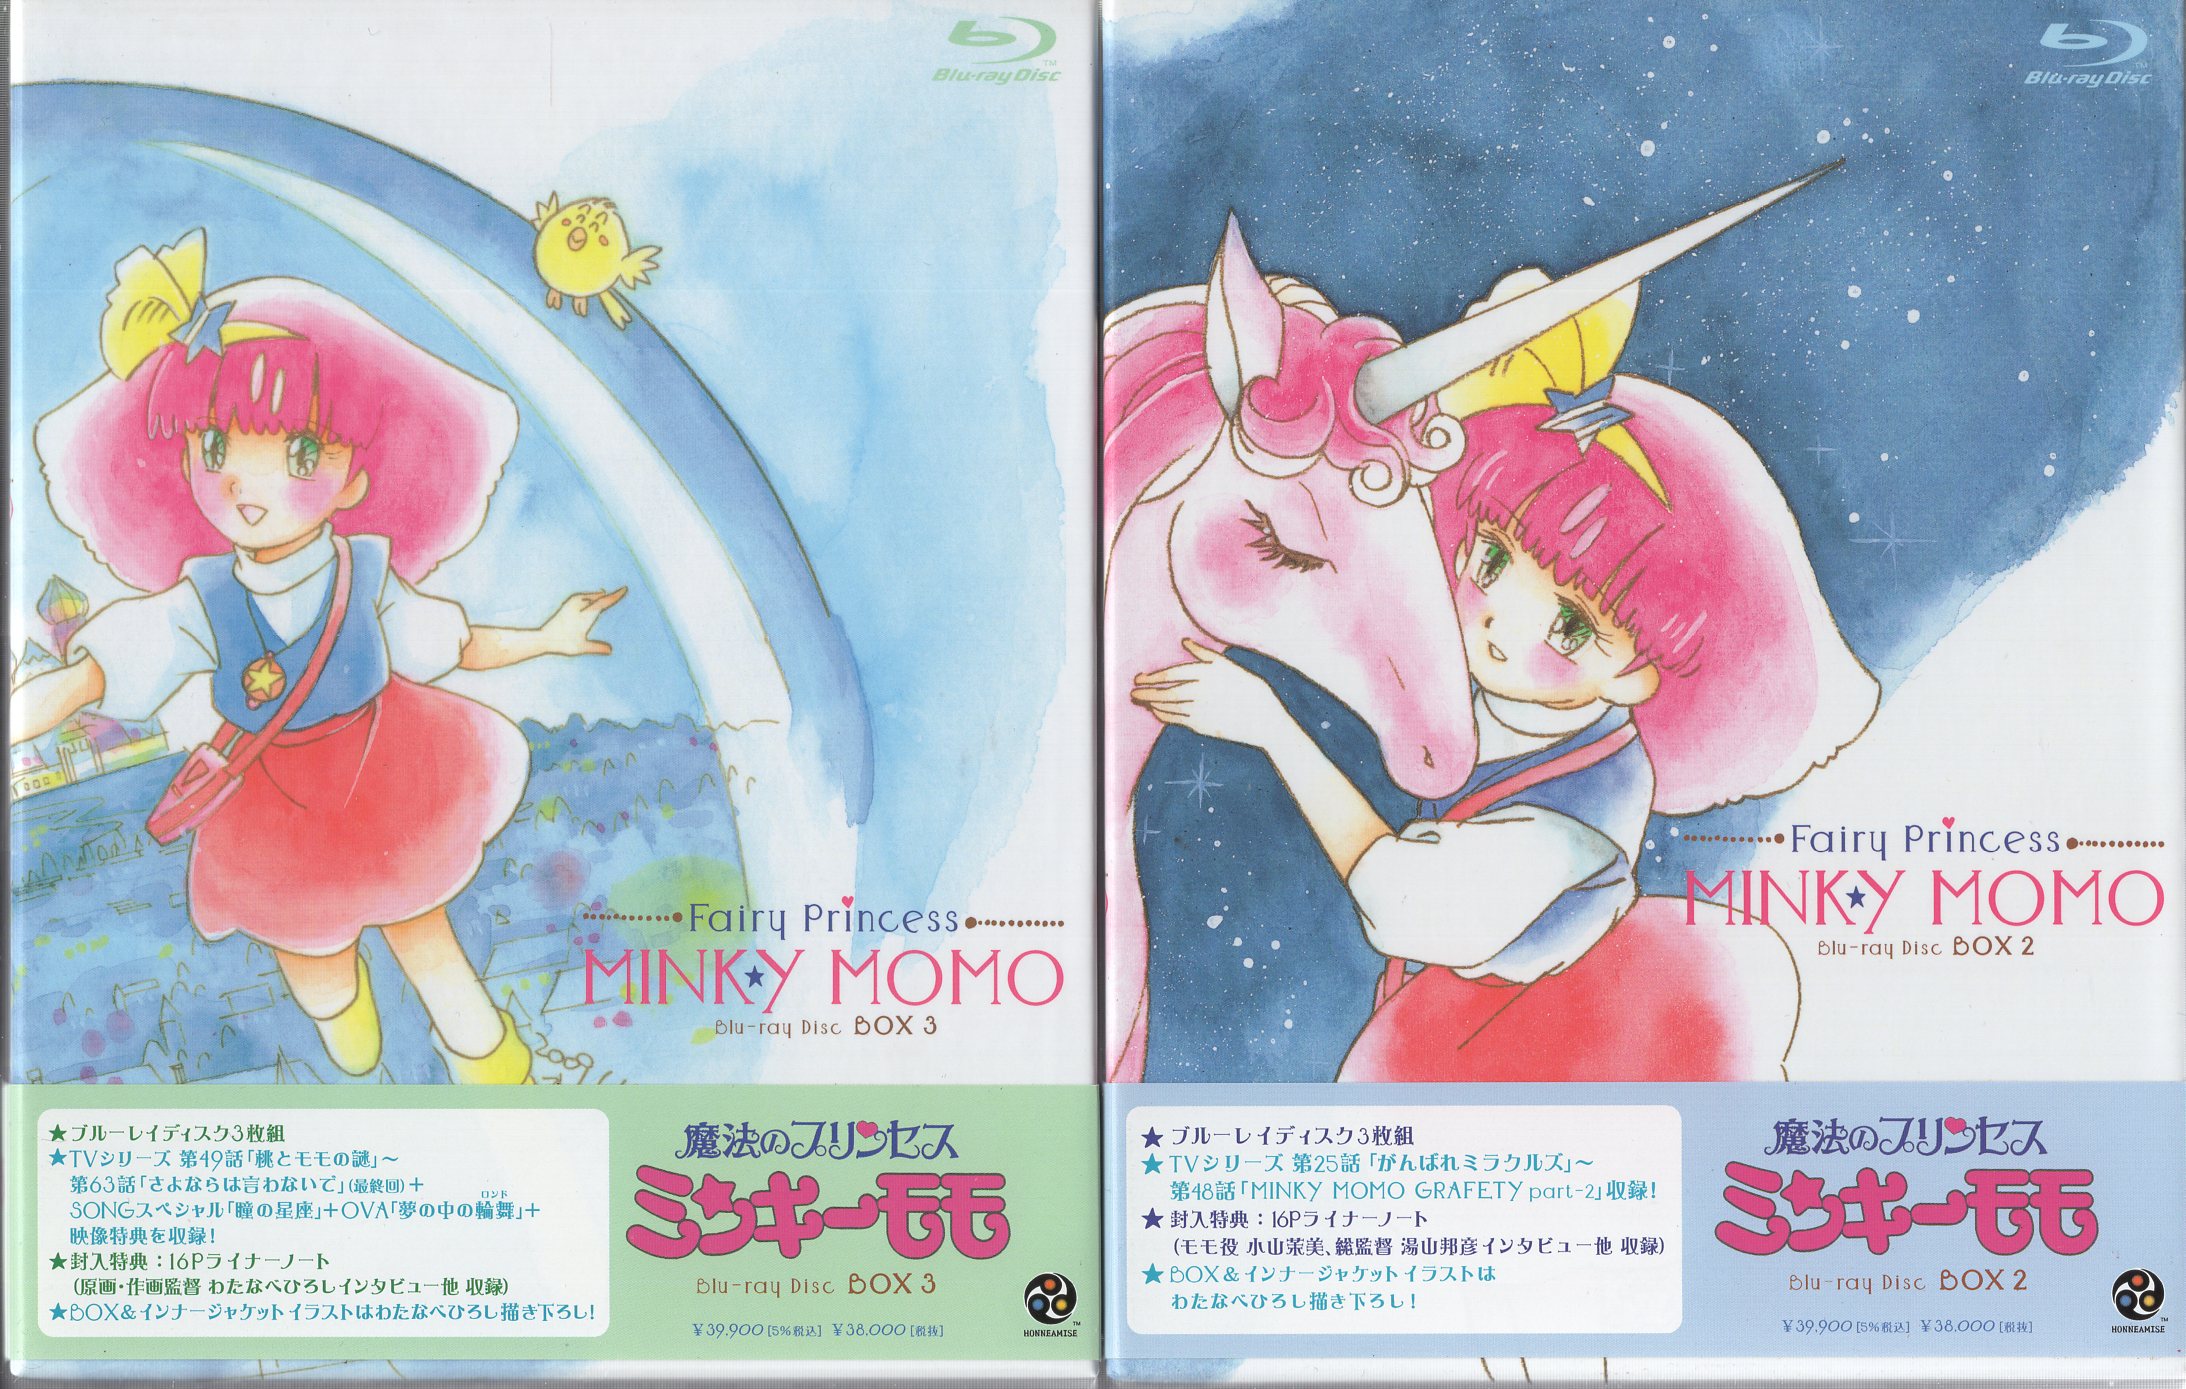 魔法のプリンセス ミンキーモモ DVD-BOX(2)(3) 初回限定生産 - DVD